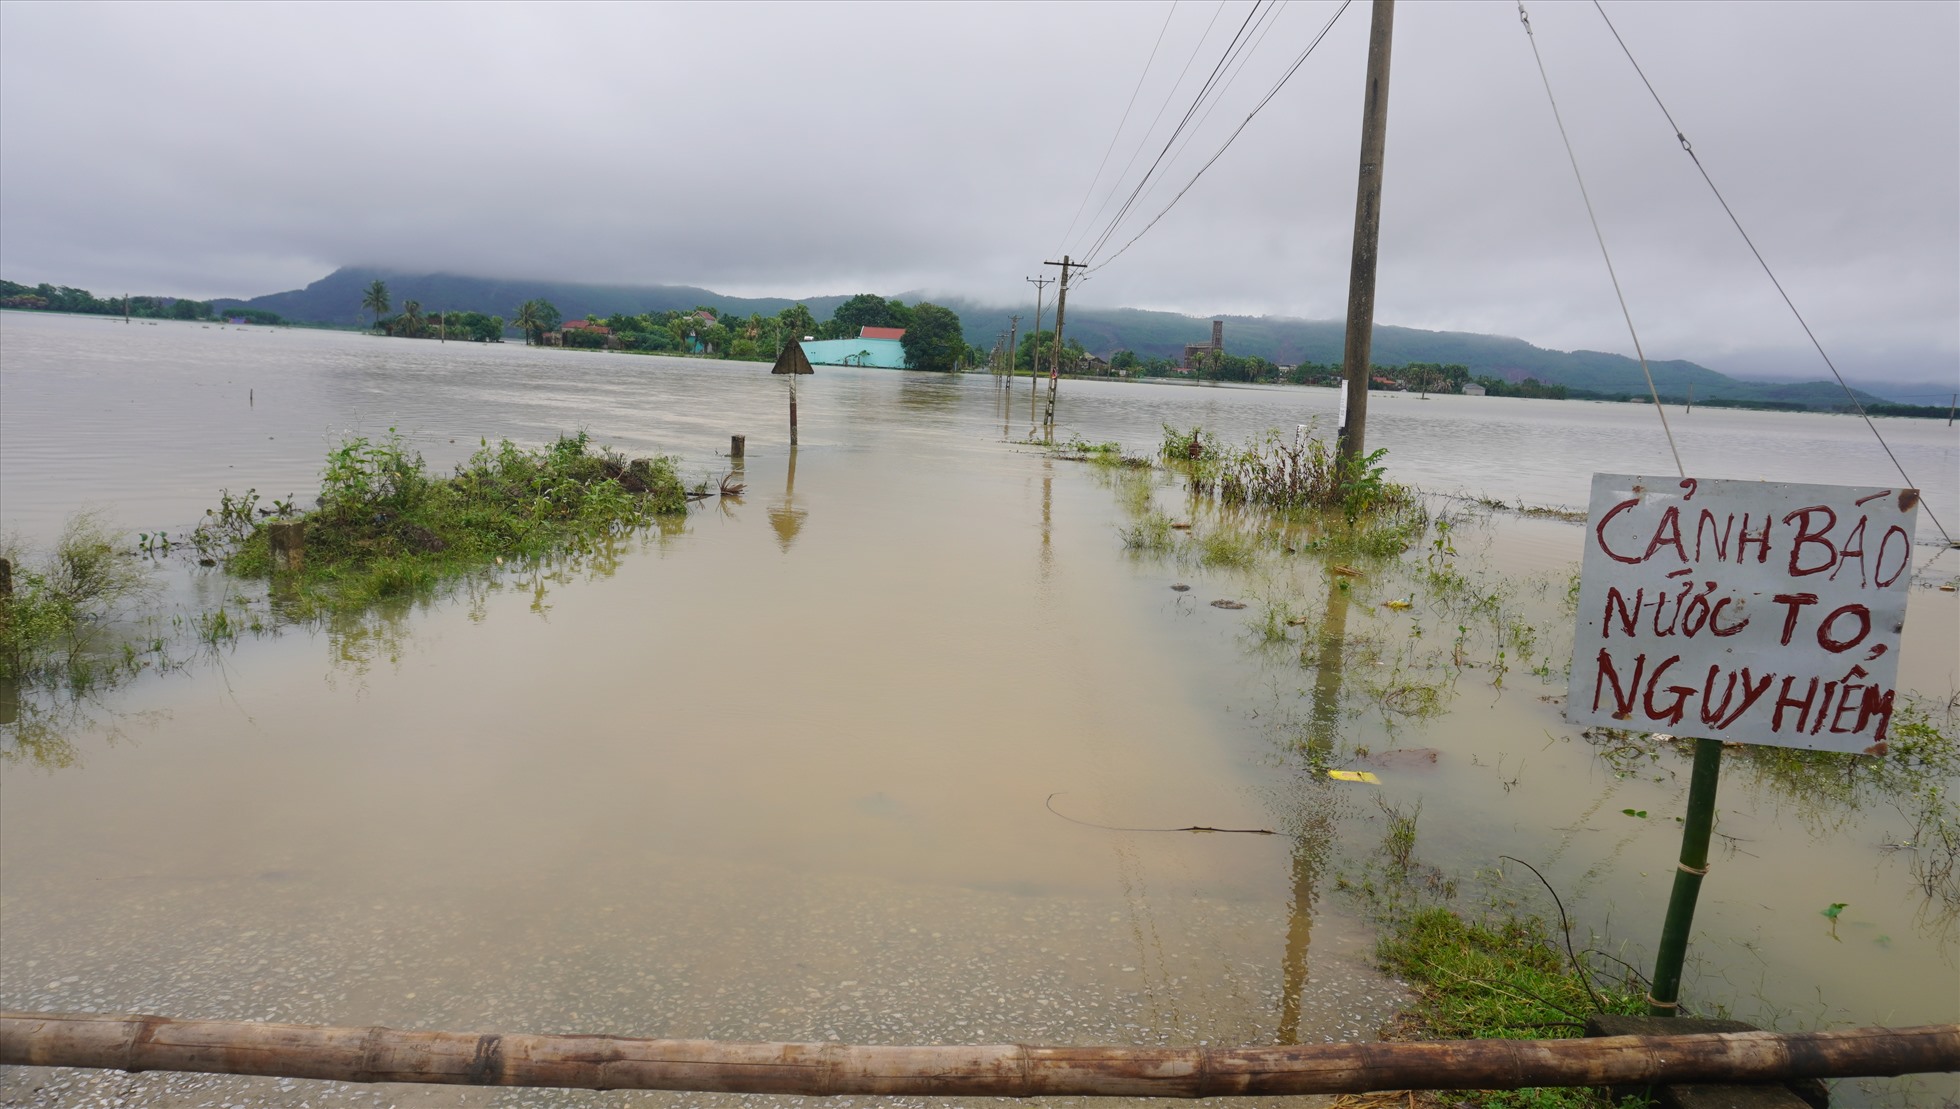 nước lũ dâng cao đã gây ngập lụt hoàn toàn con đường bê-tông nối bên ngoài với thôn Kén, khiến toàn bộ 172 hộ dân với 748 nhân khẩu của thôn bị cô lập, chia cắt với bên ngoài.